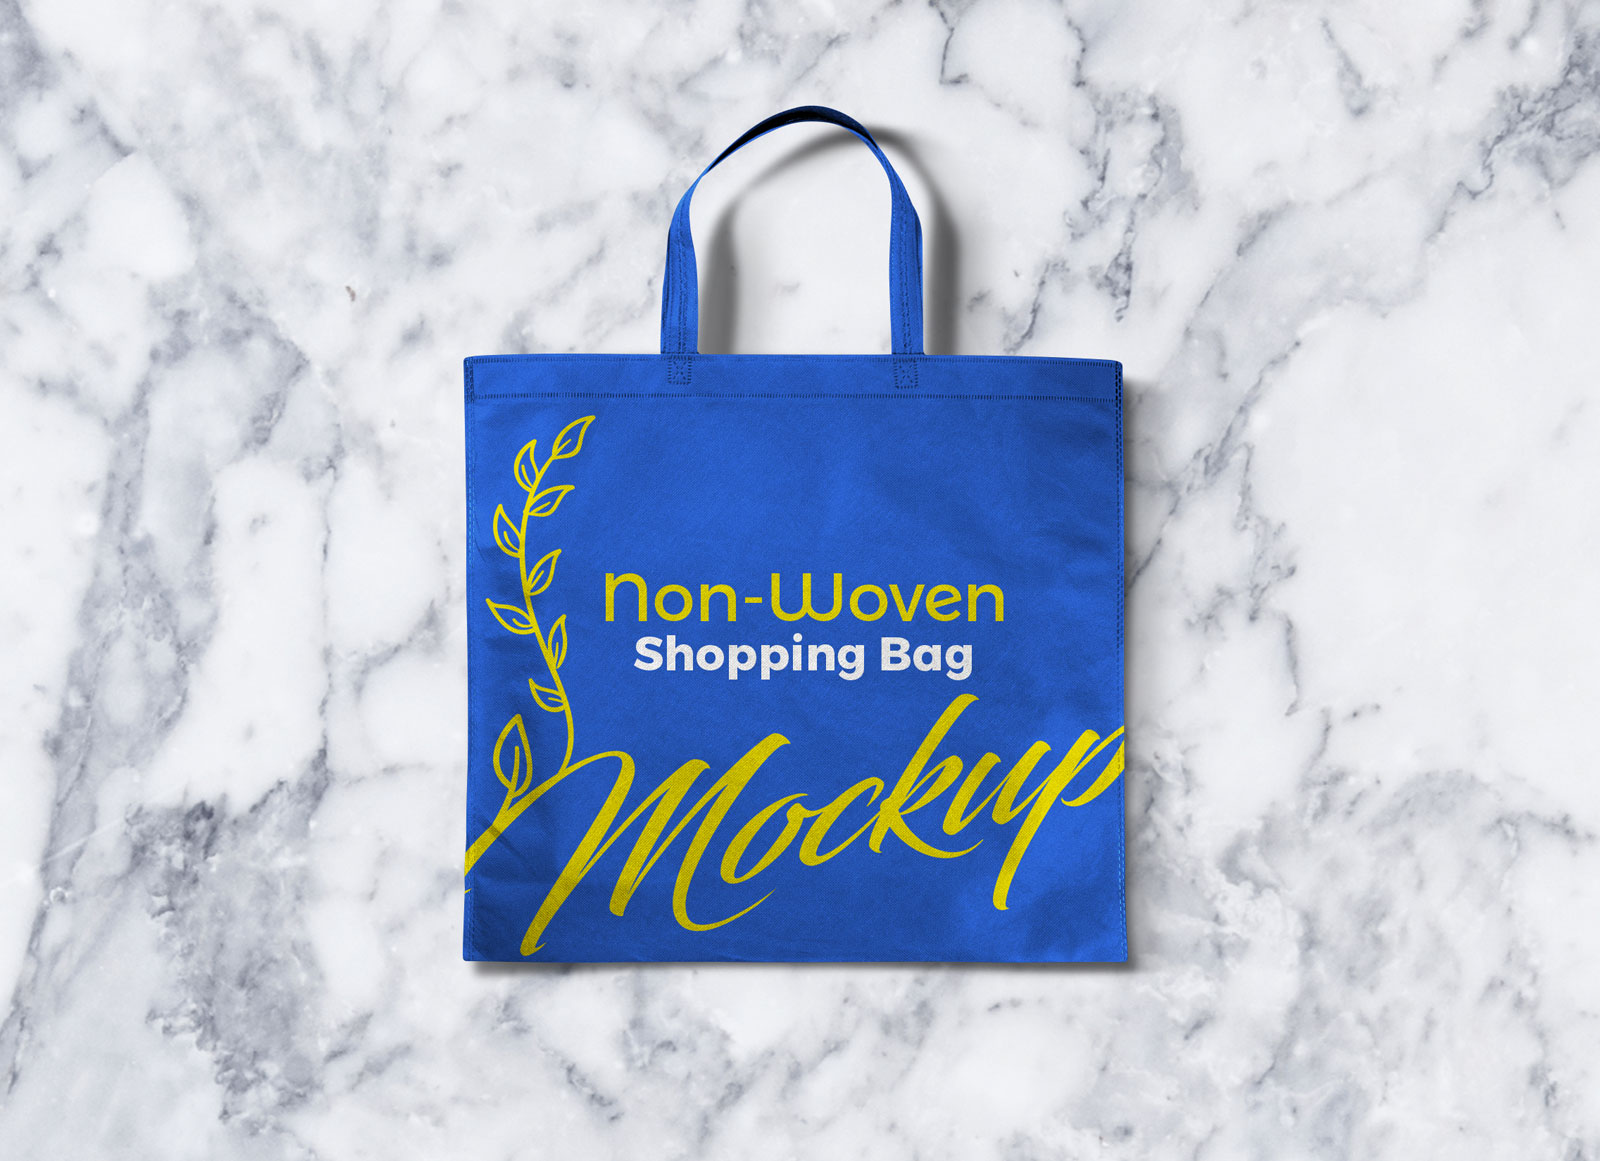 Non-woven-Shopping-Bag-Mockup-PSD-File